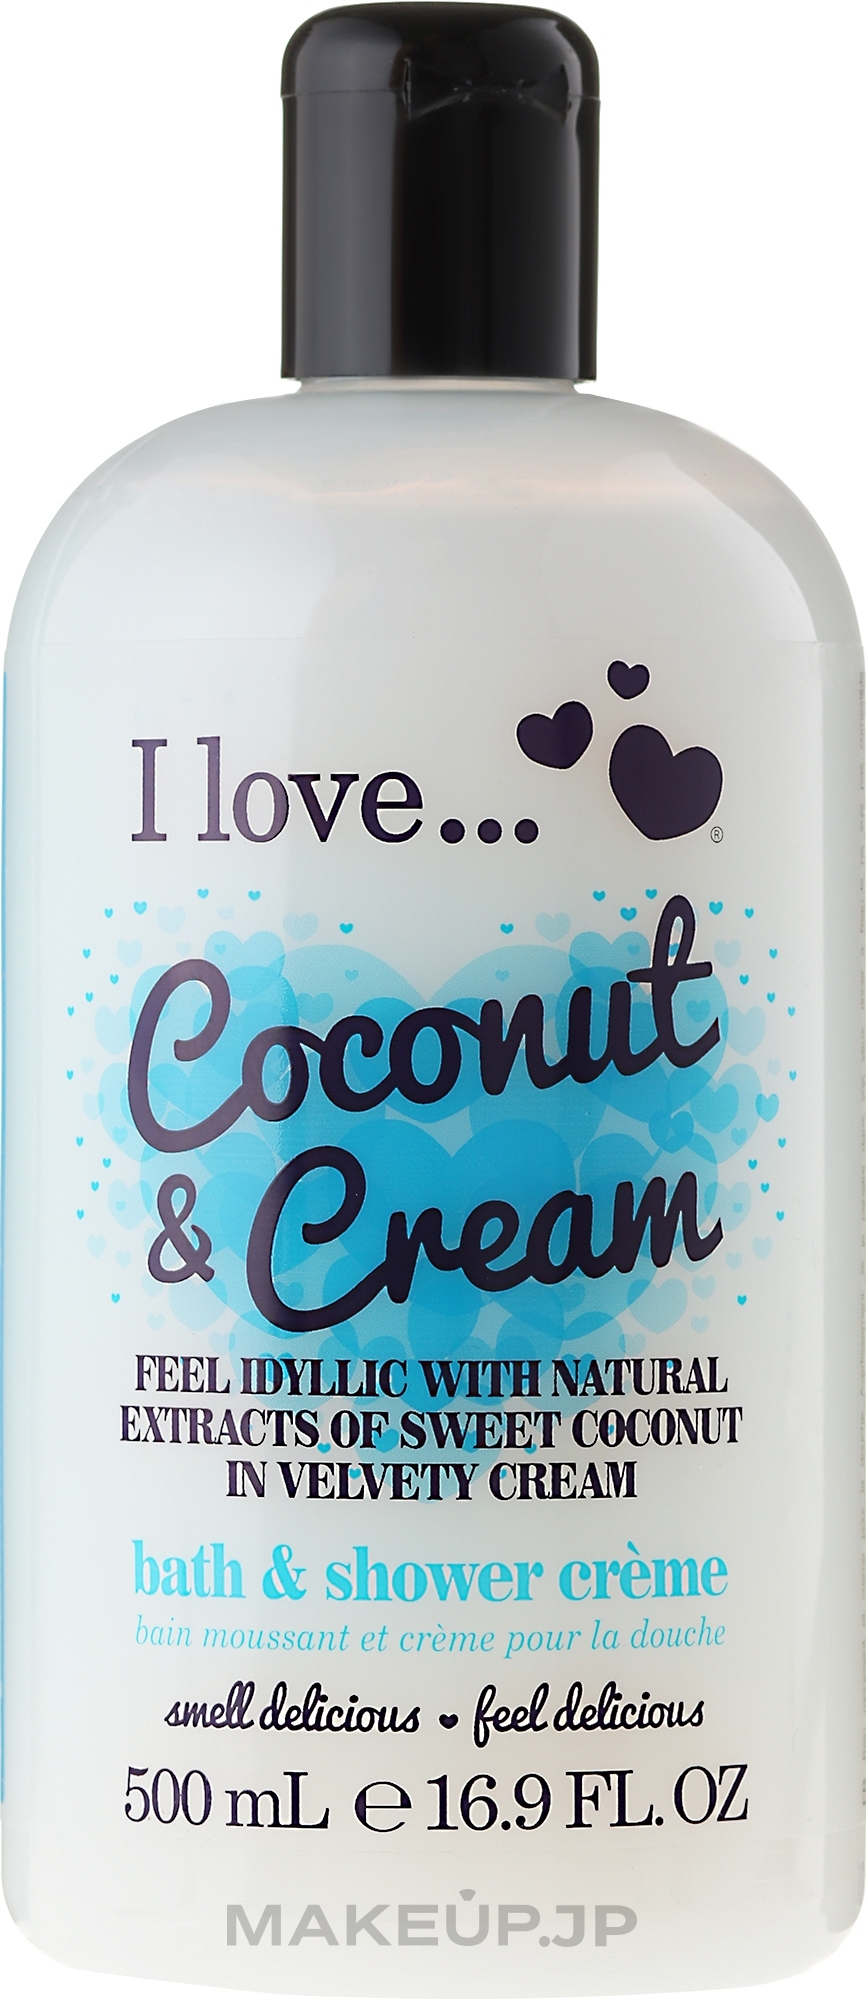 Bath & Shower Cream - I Love... Coconut & Cream Bubble Bath And Shower Creme  — photo 500 ml